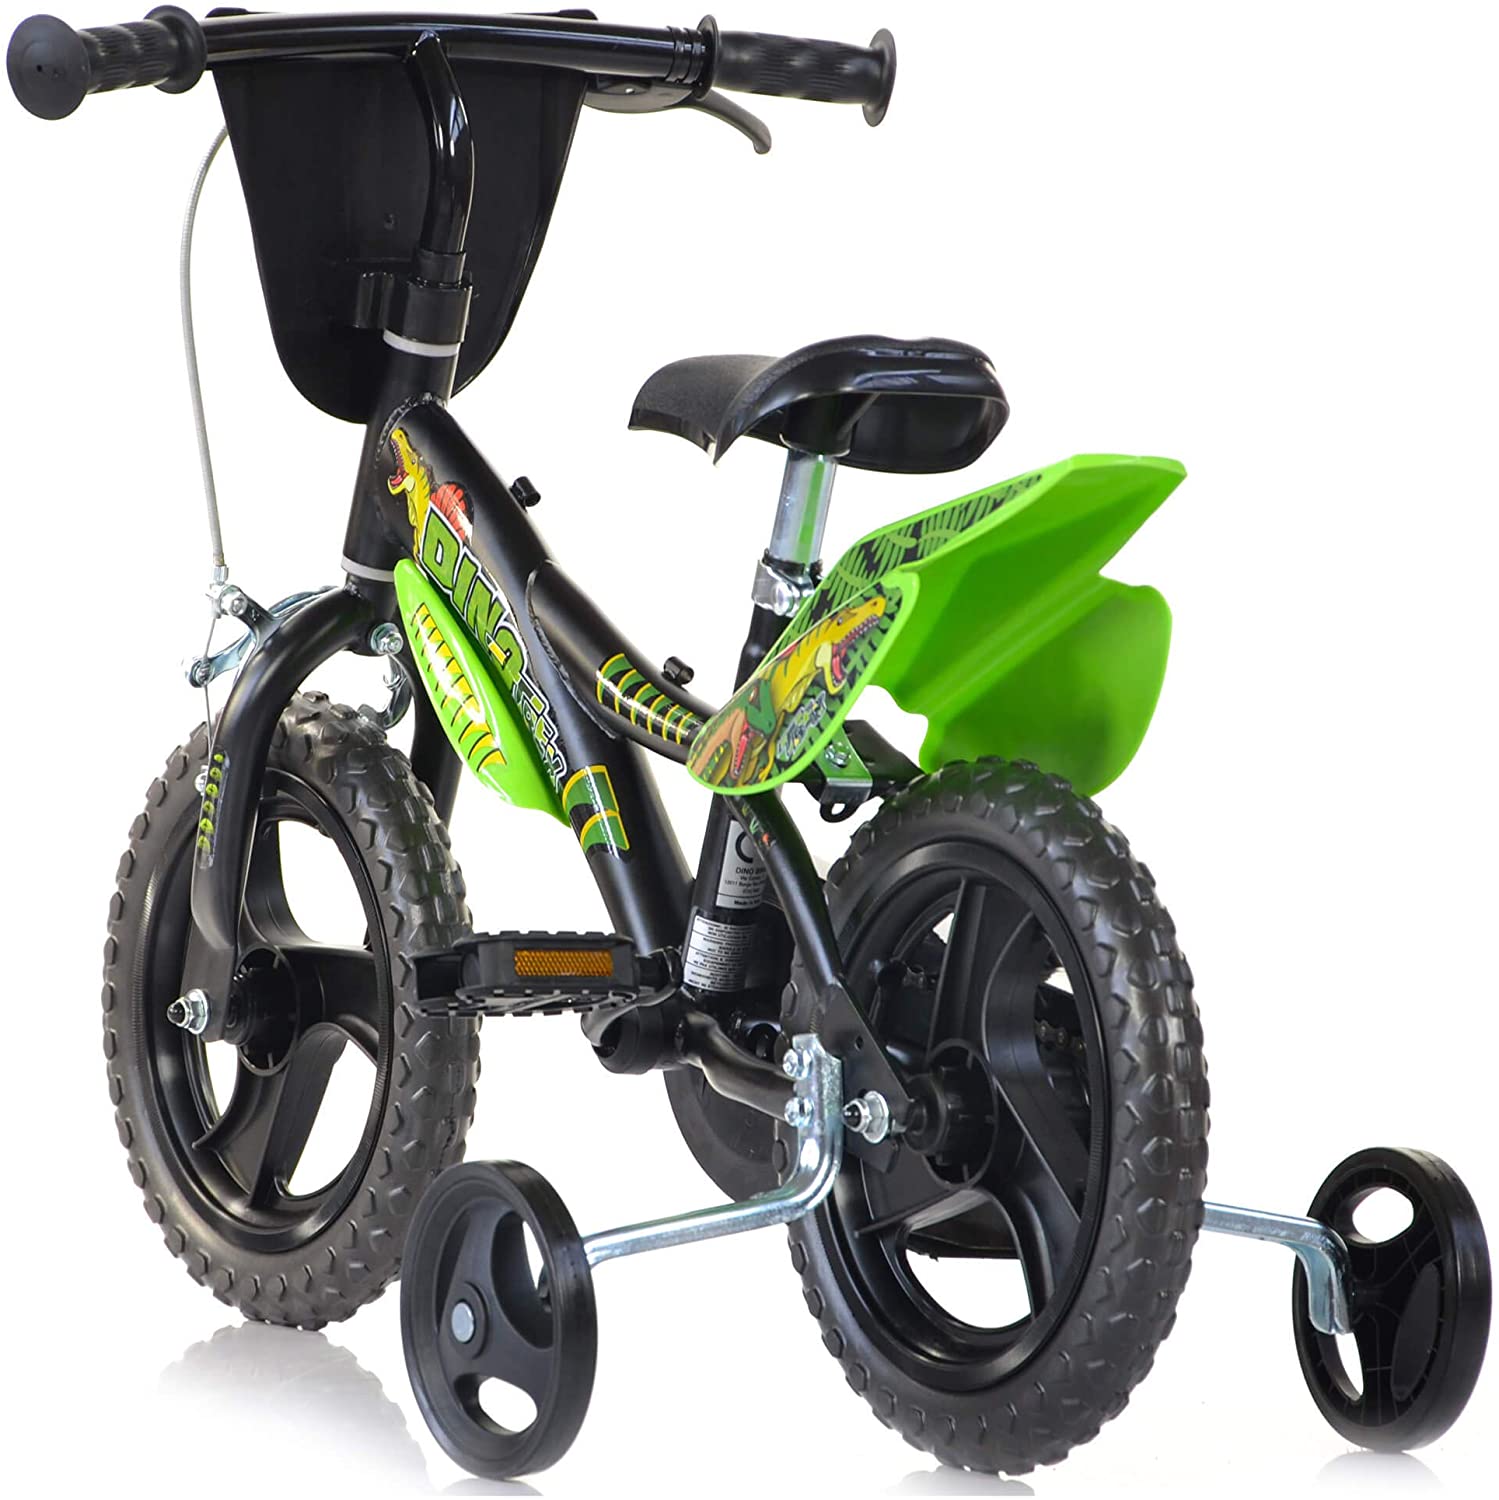 Bicicletta 14 pollici bicicletta dinosauro per bambini con stabilizzatori, mascherina frontale - adatta dai 5 ai 7 anni - 